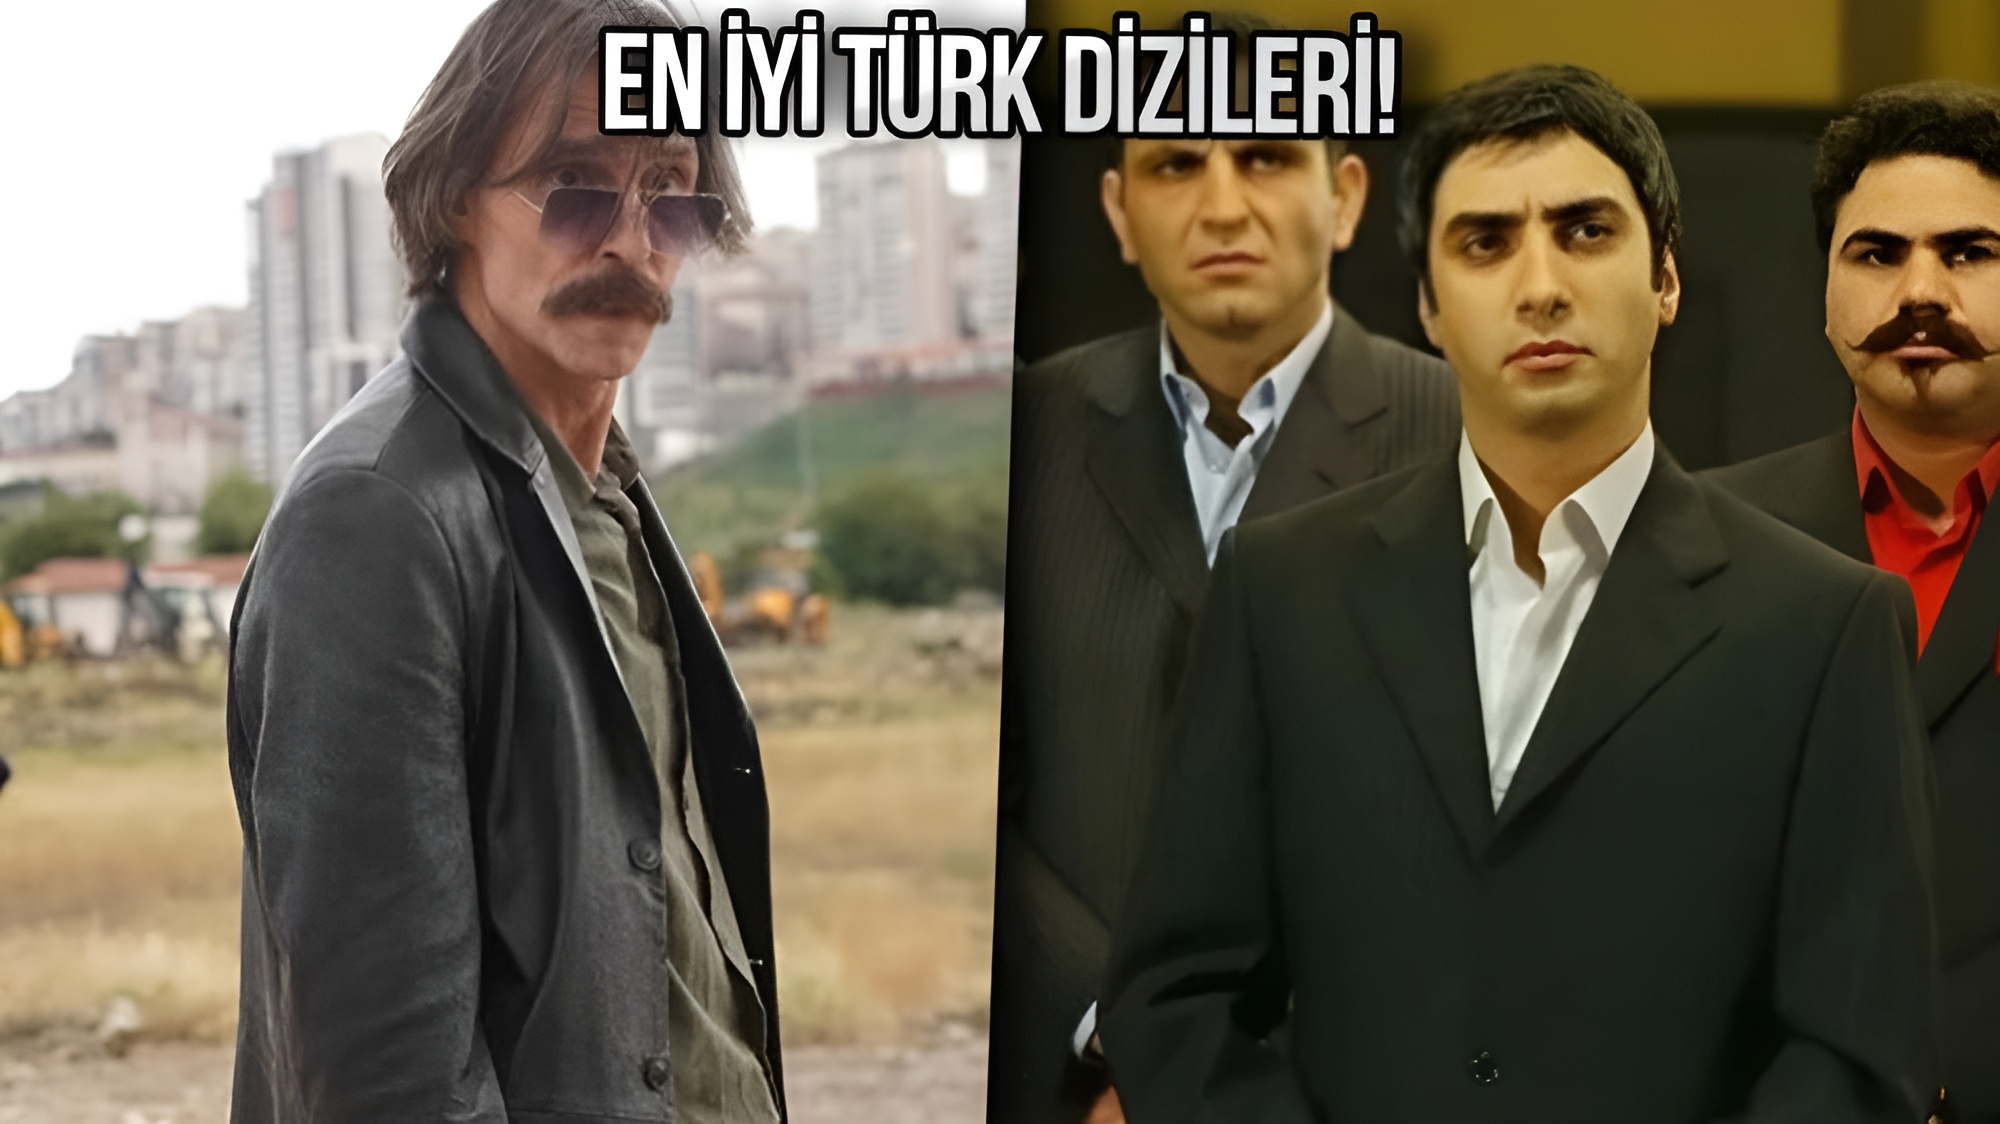 en-iyi-turk-dizileri-imdb-KAPAK-1.jpg